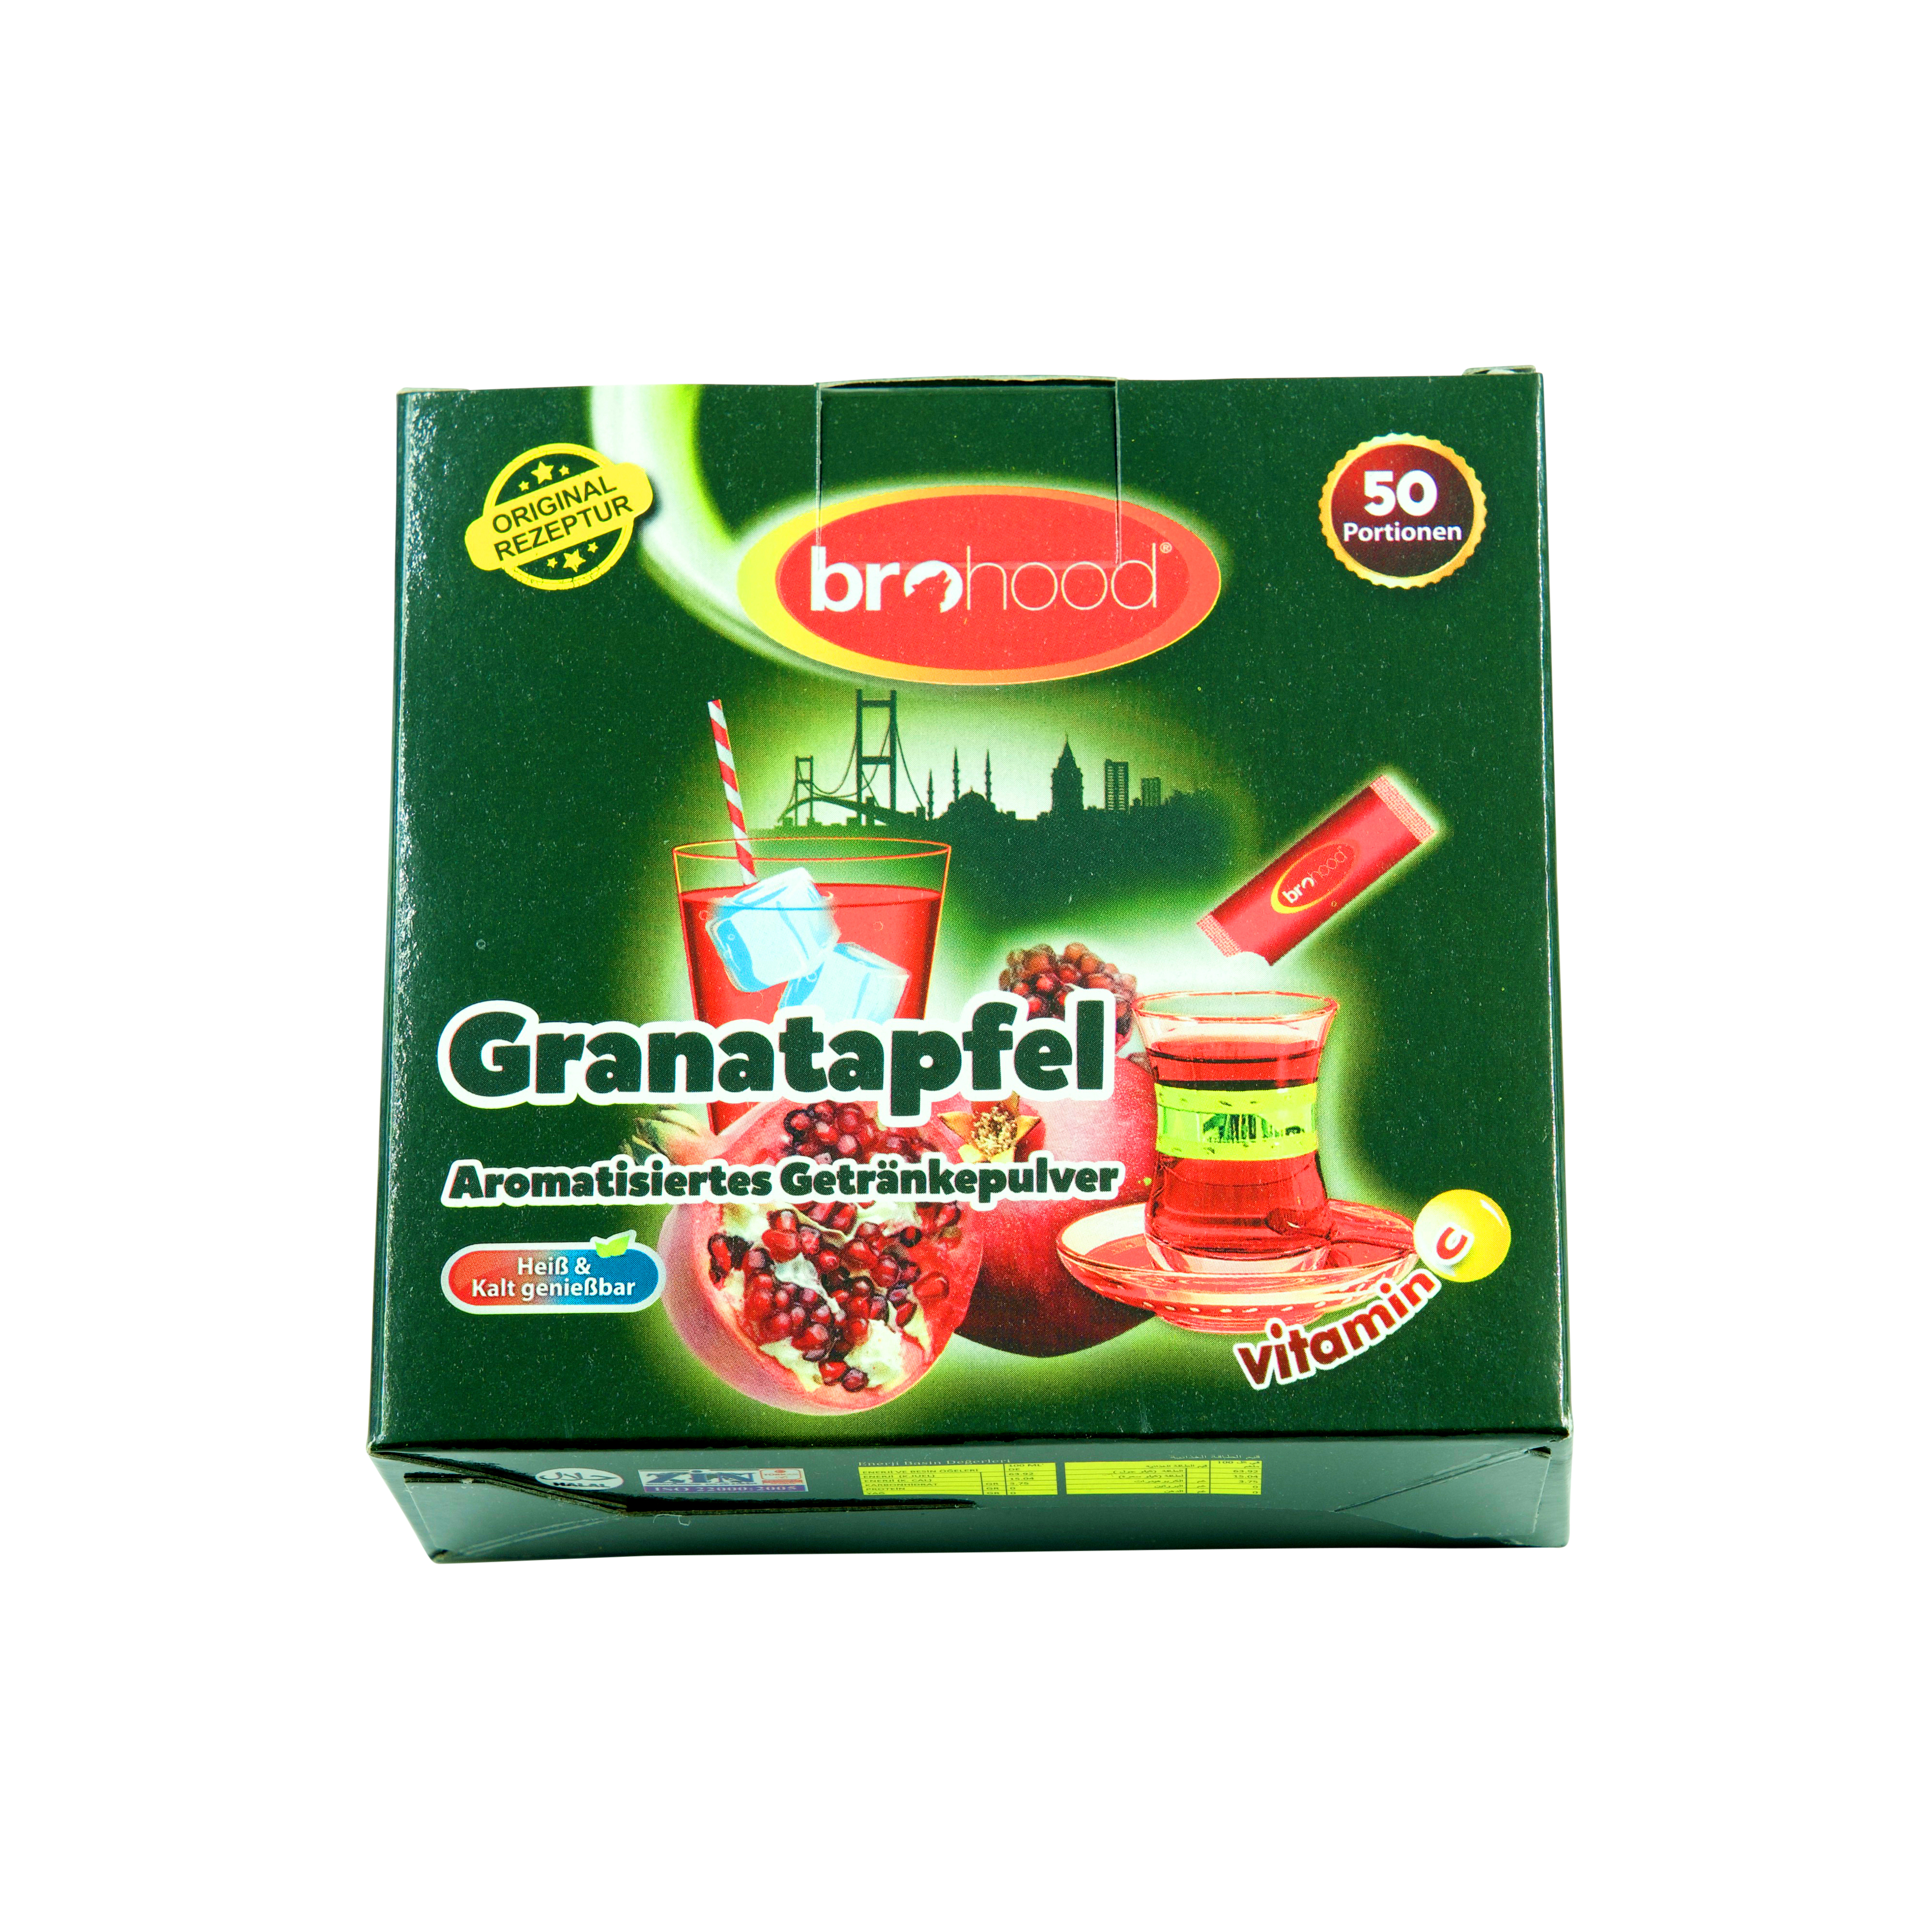 Granatapfel - aromatisiertes Getränkepulver